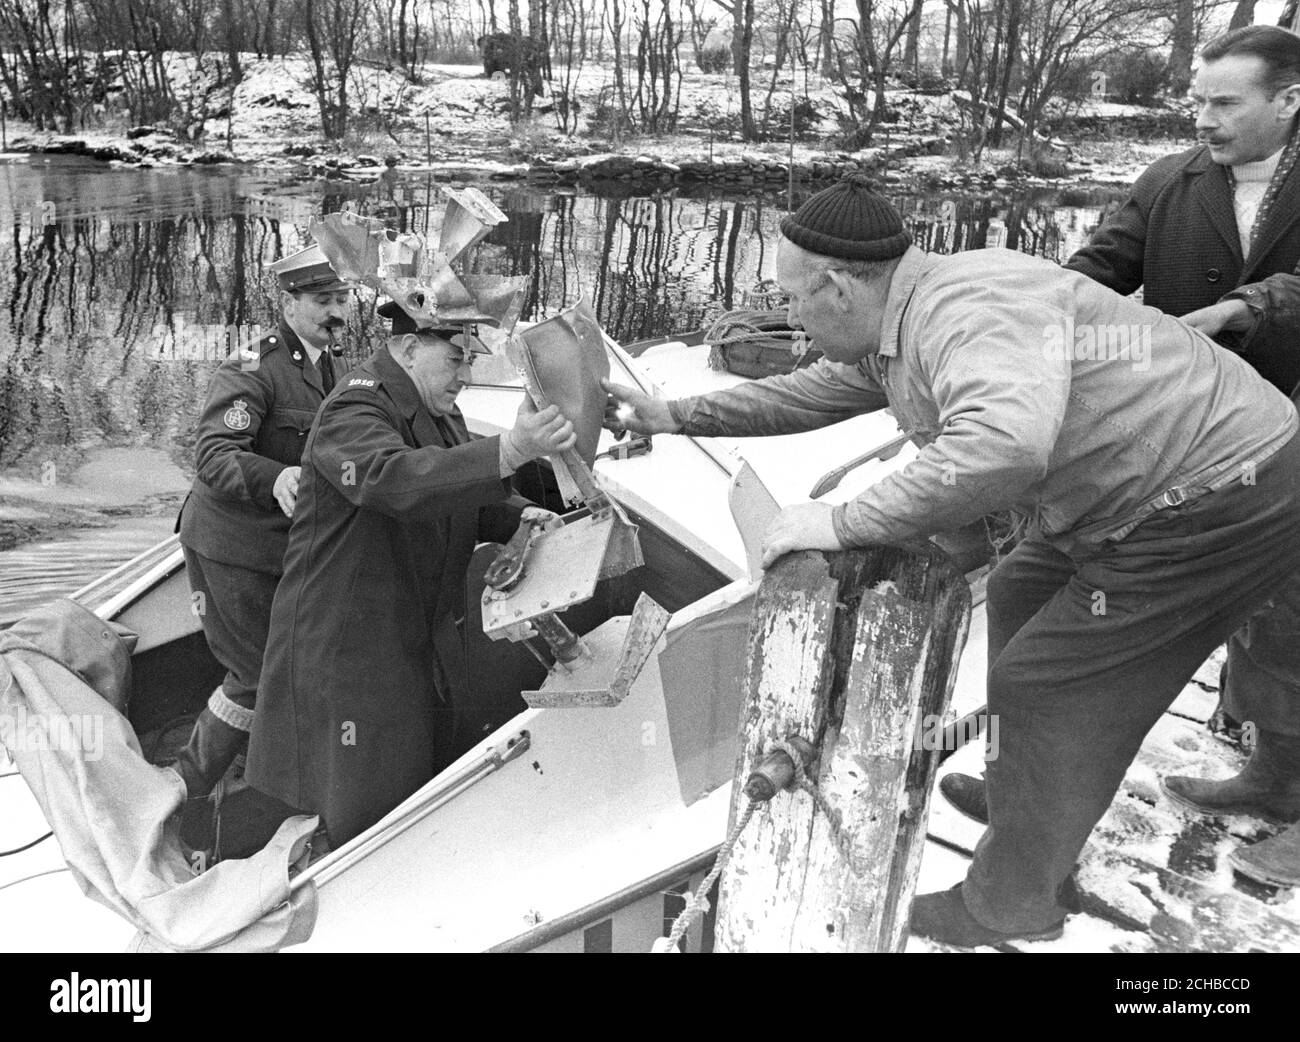 Ein Teil des Steuermechanismus von Bluebird wird am Lake Coniston an Land gebracht. Dies war Teil des Wracks, das von Royal Navy Tauchern gefunden wurde, die gesucht haben, seit Donald Campbell getötet wurde, als sein Jetboot während eines Weltrekordversuchs im Wasser abgestürzt war. Stockfoto